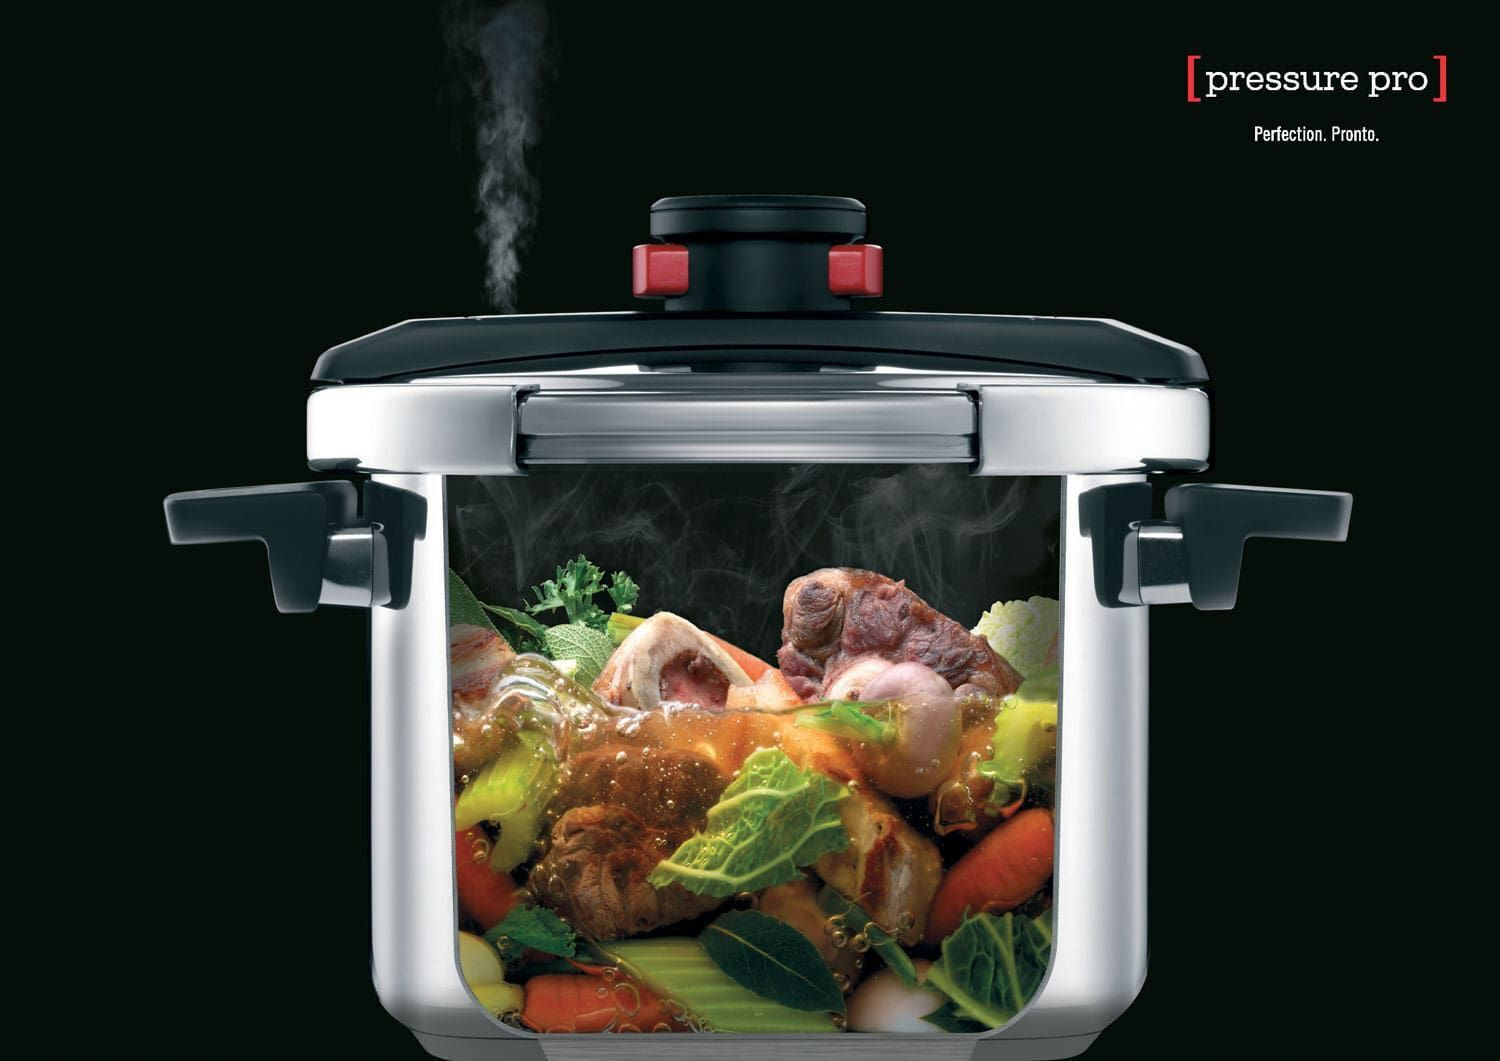 Fissler Vitavit Premium Pressure Cooker 6.0L –